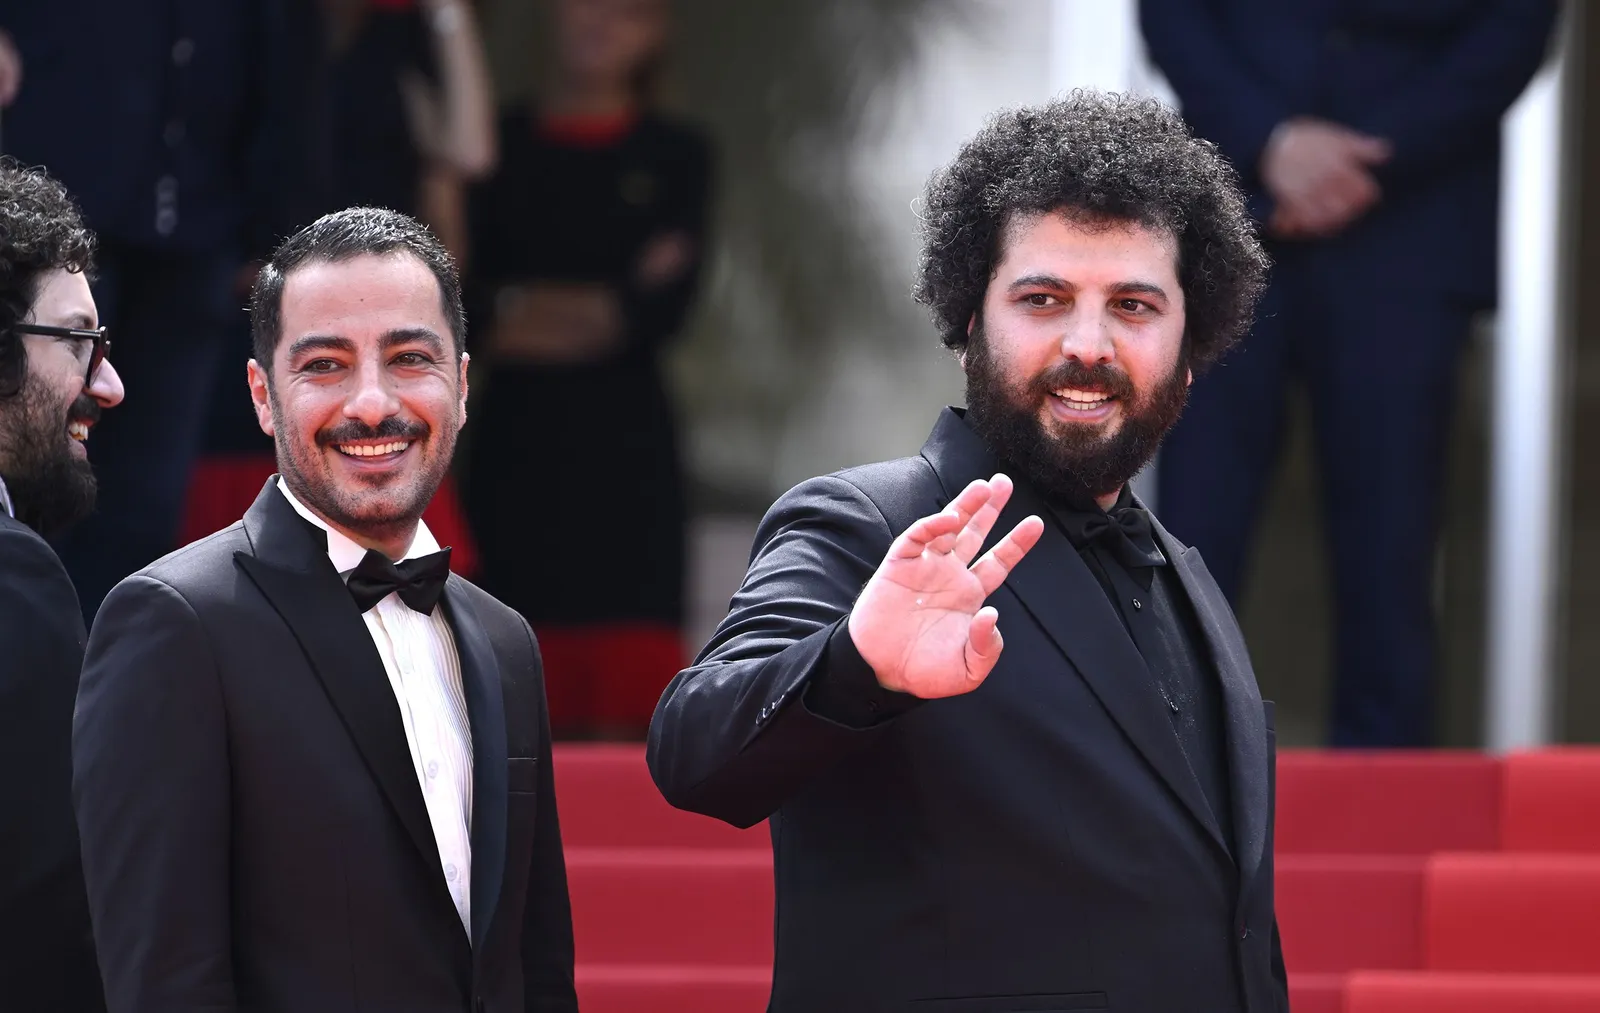 Saeed Roustayi, regista di Leila e i suoi fratelli, è stato condannato a 6 mesi di prigione